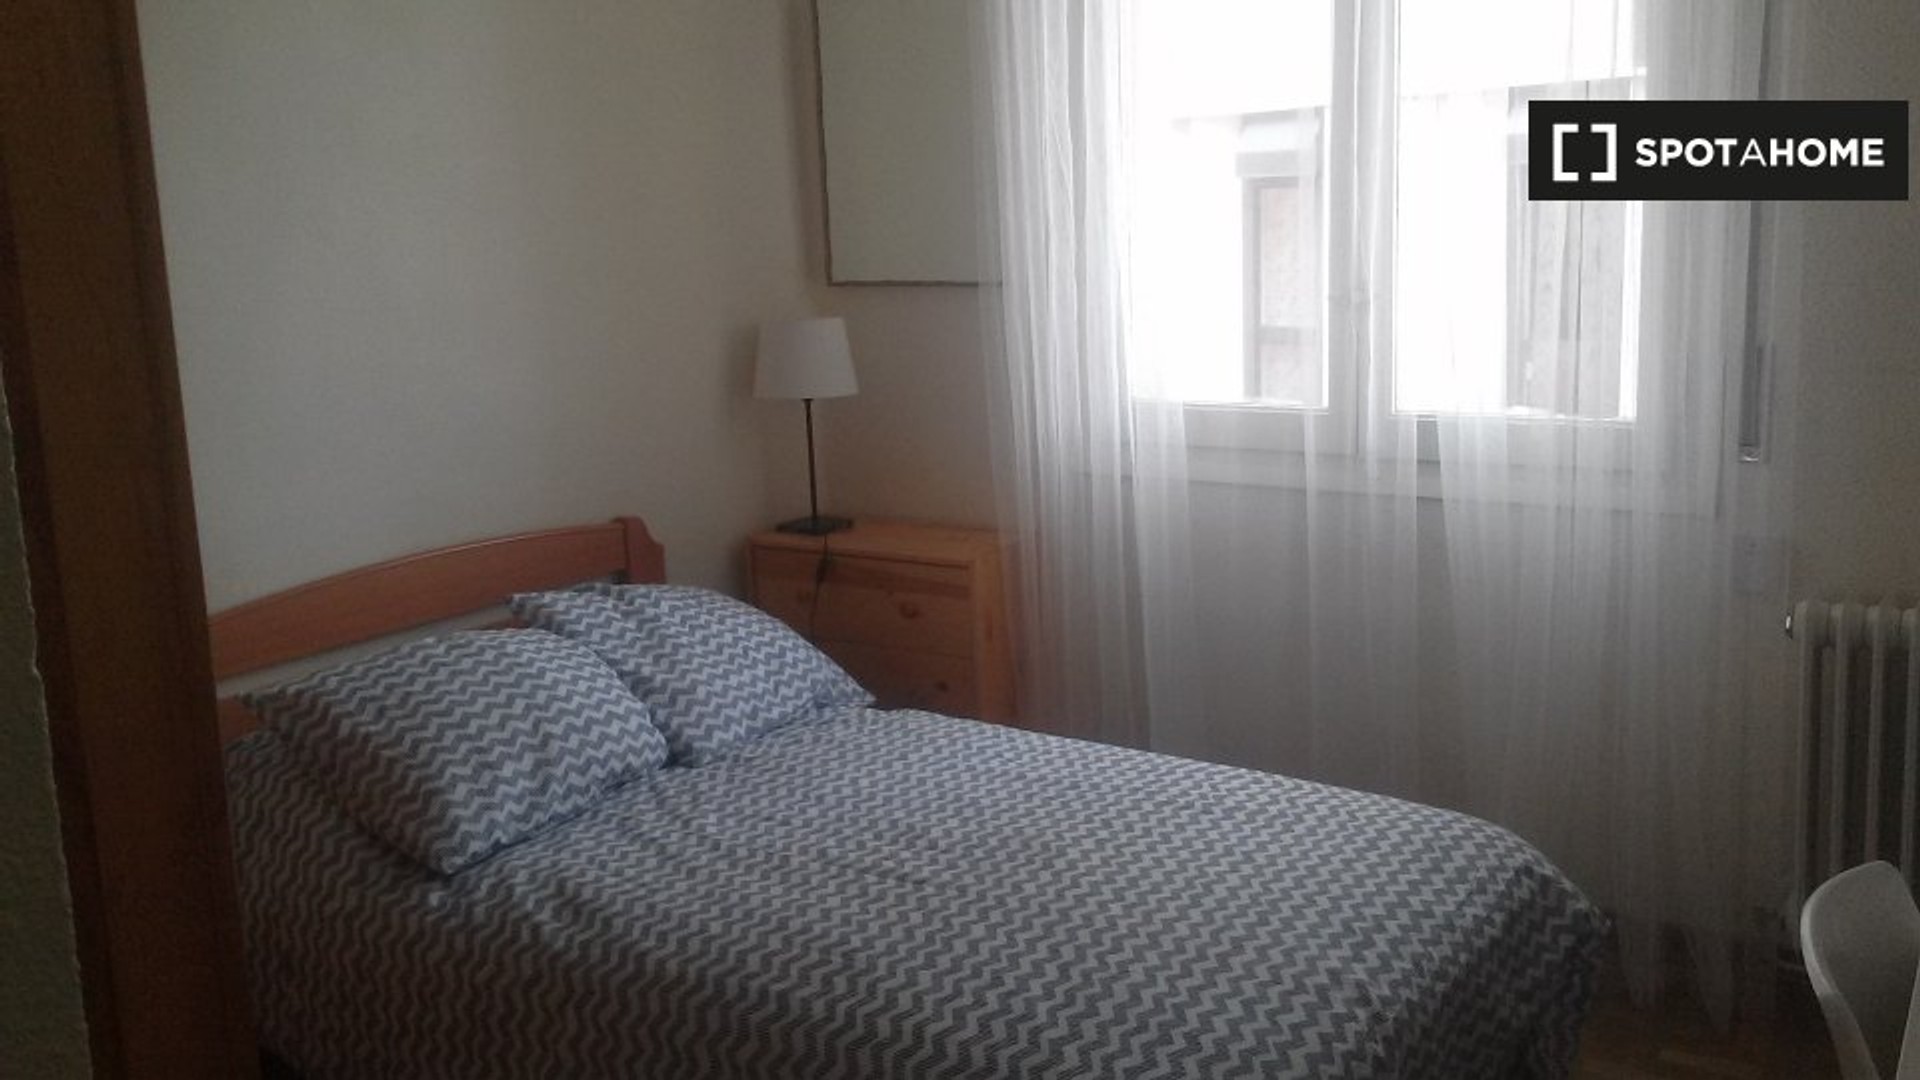 Habitación privada barata en Pamplona/iruña